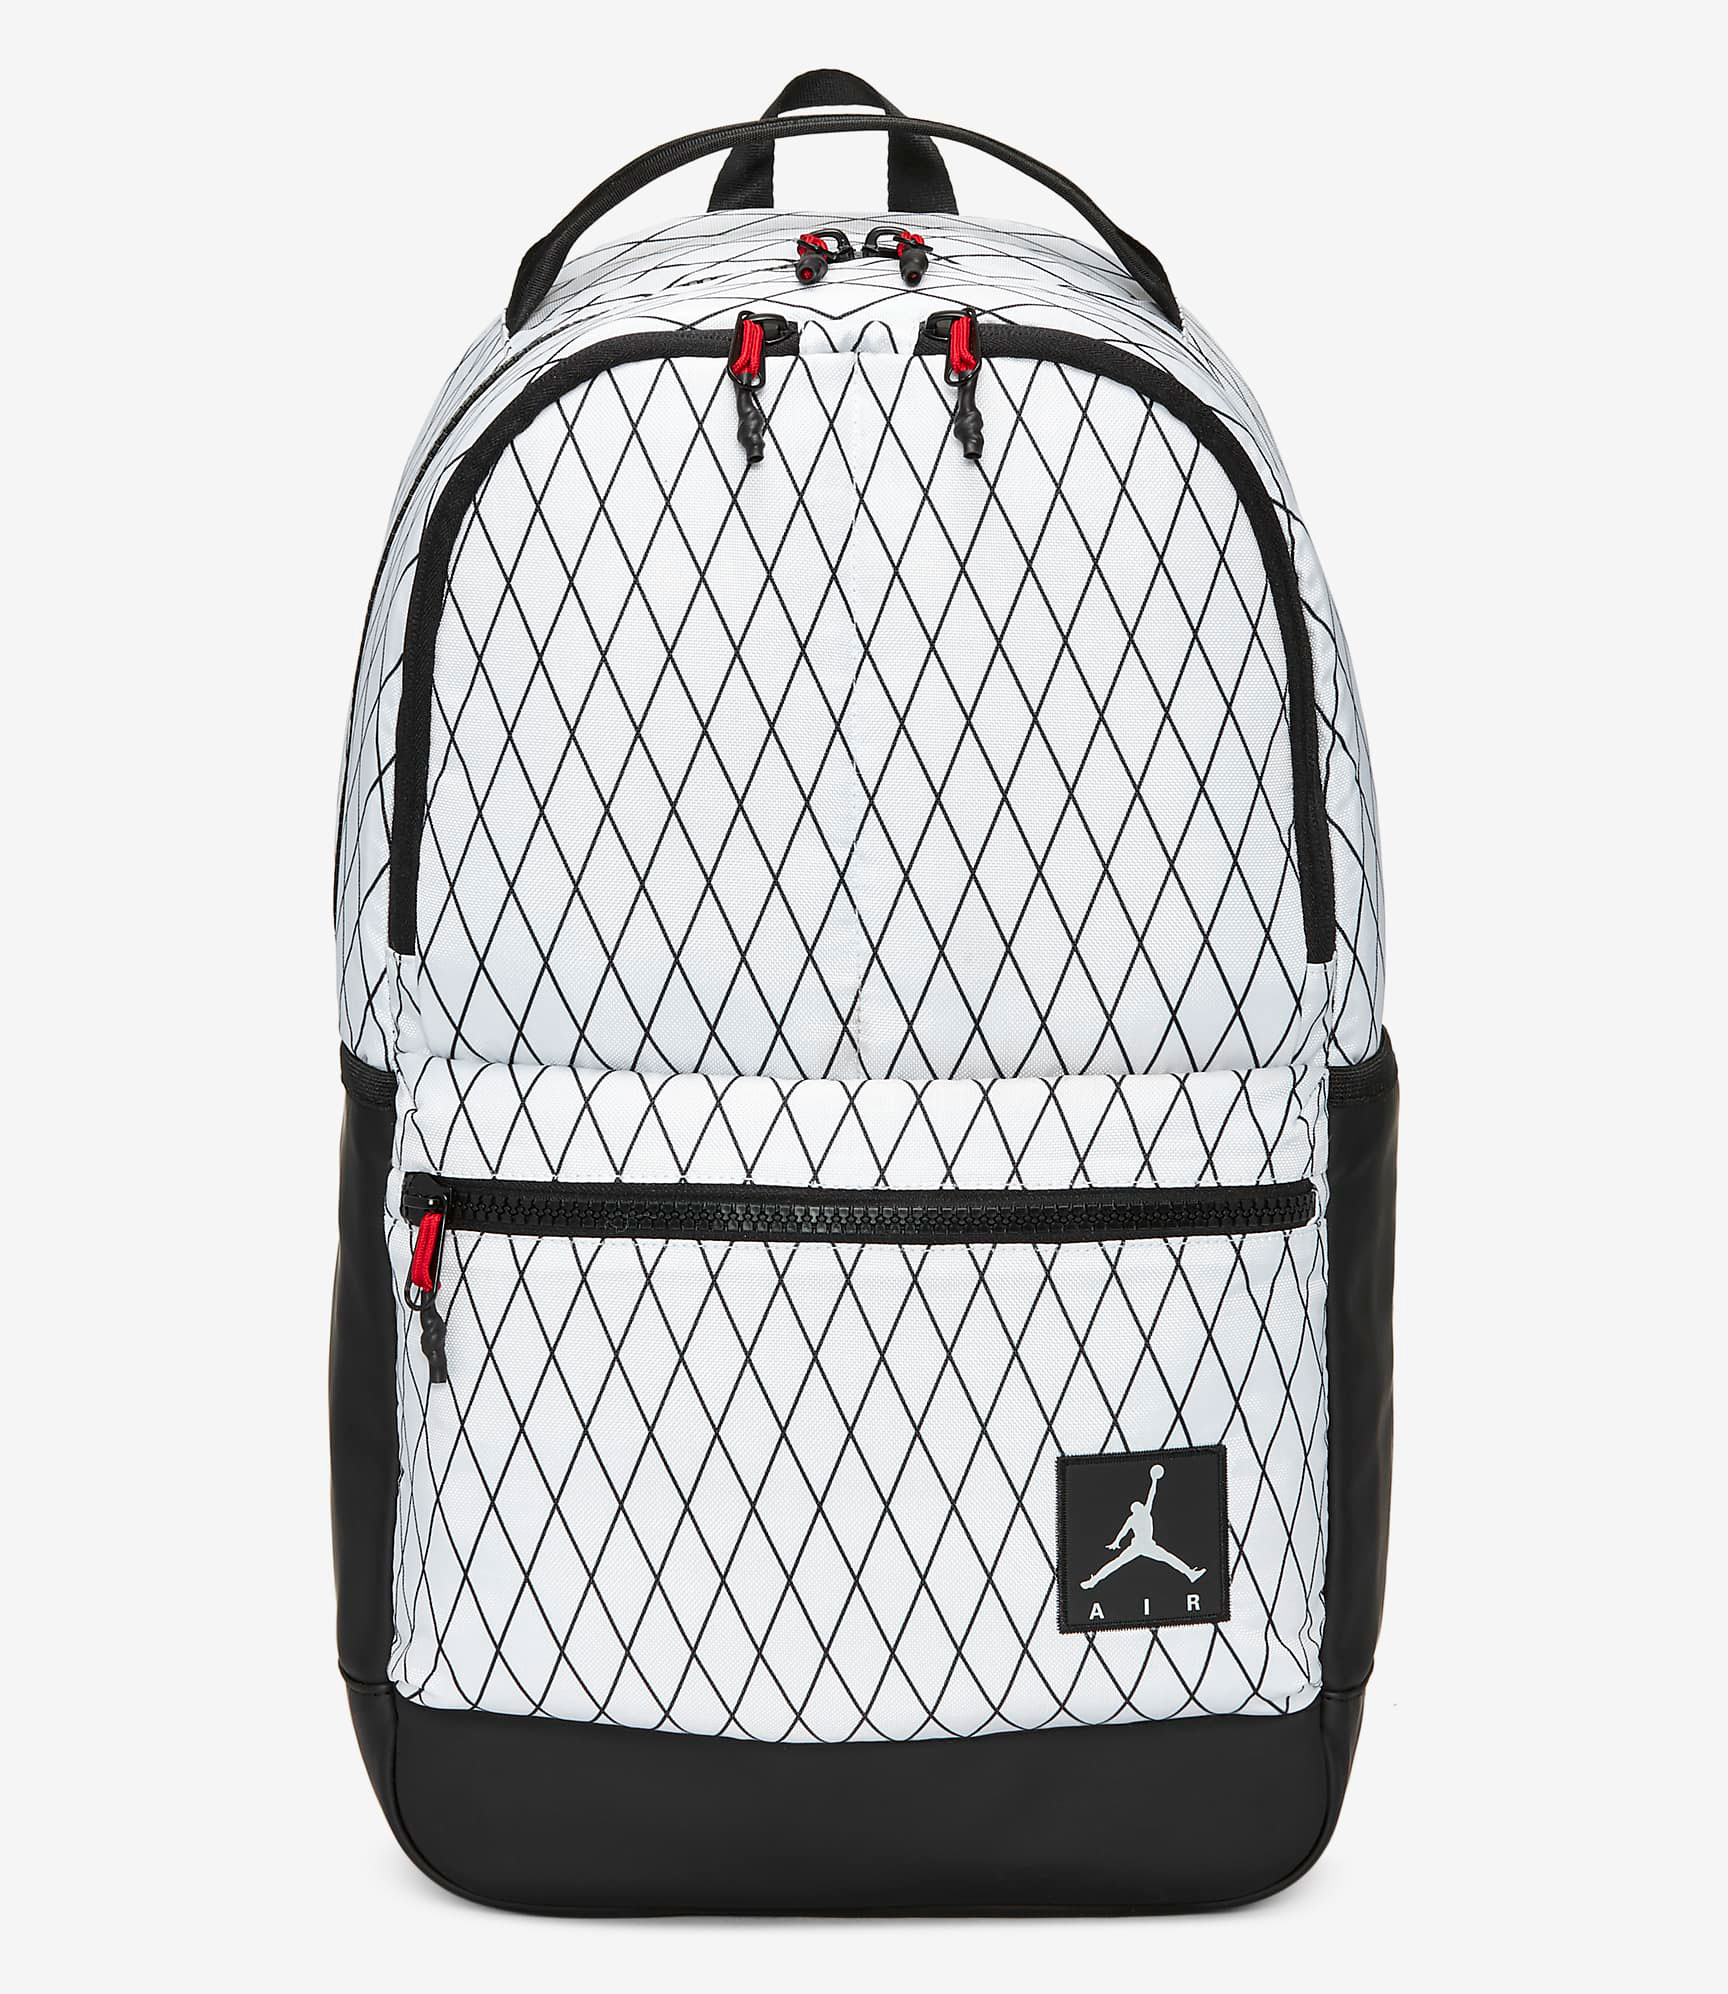 jordan-backpack-fall-2020-white-black